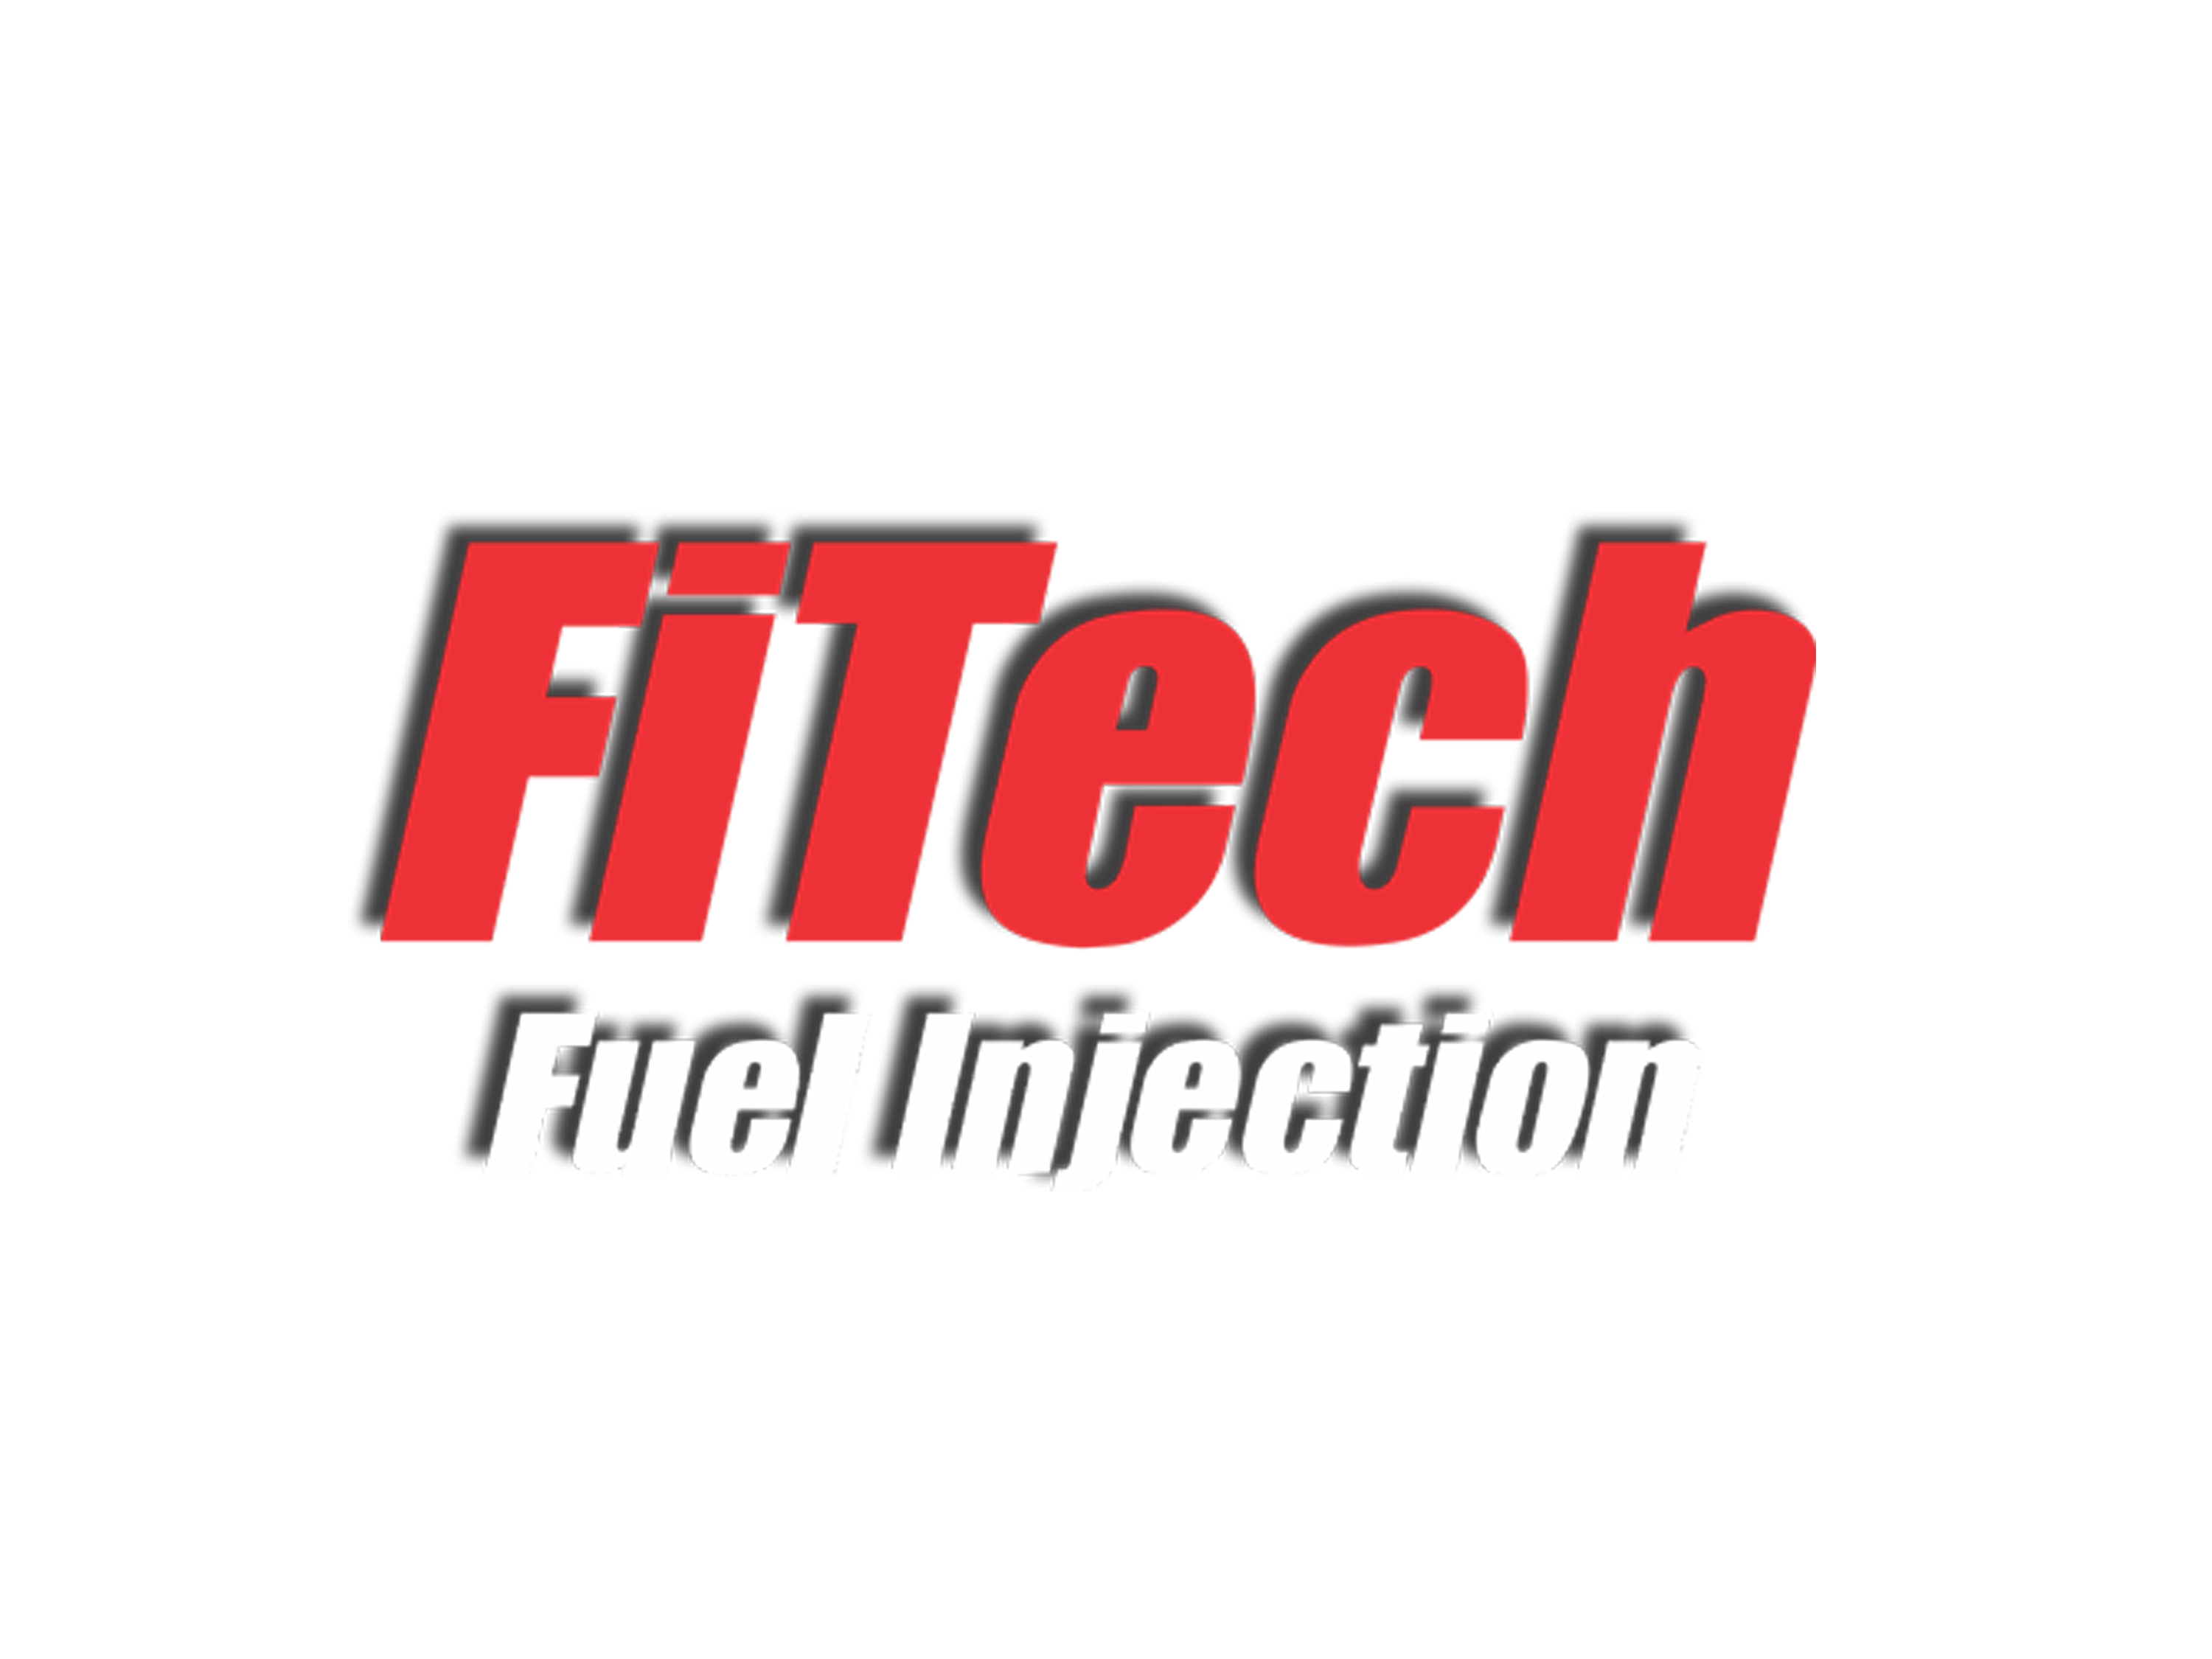 fitech website 1